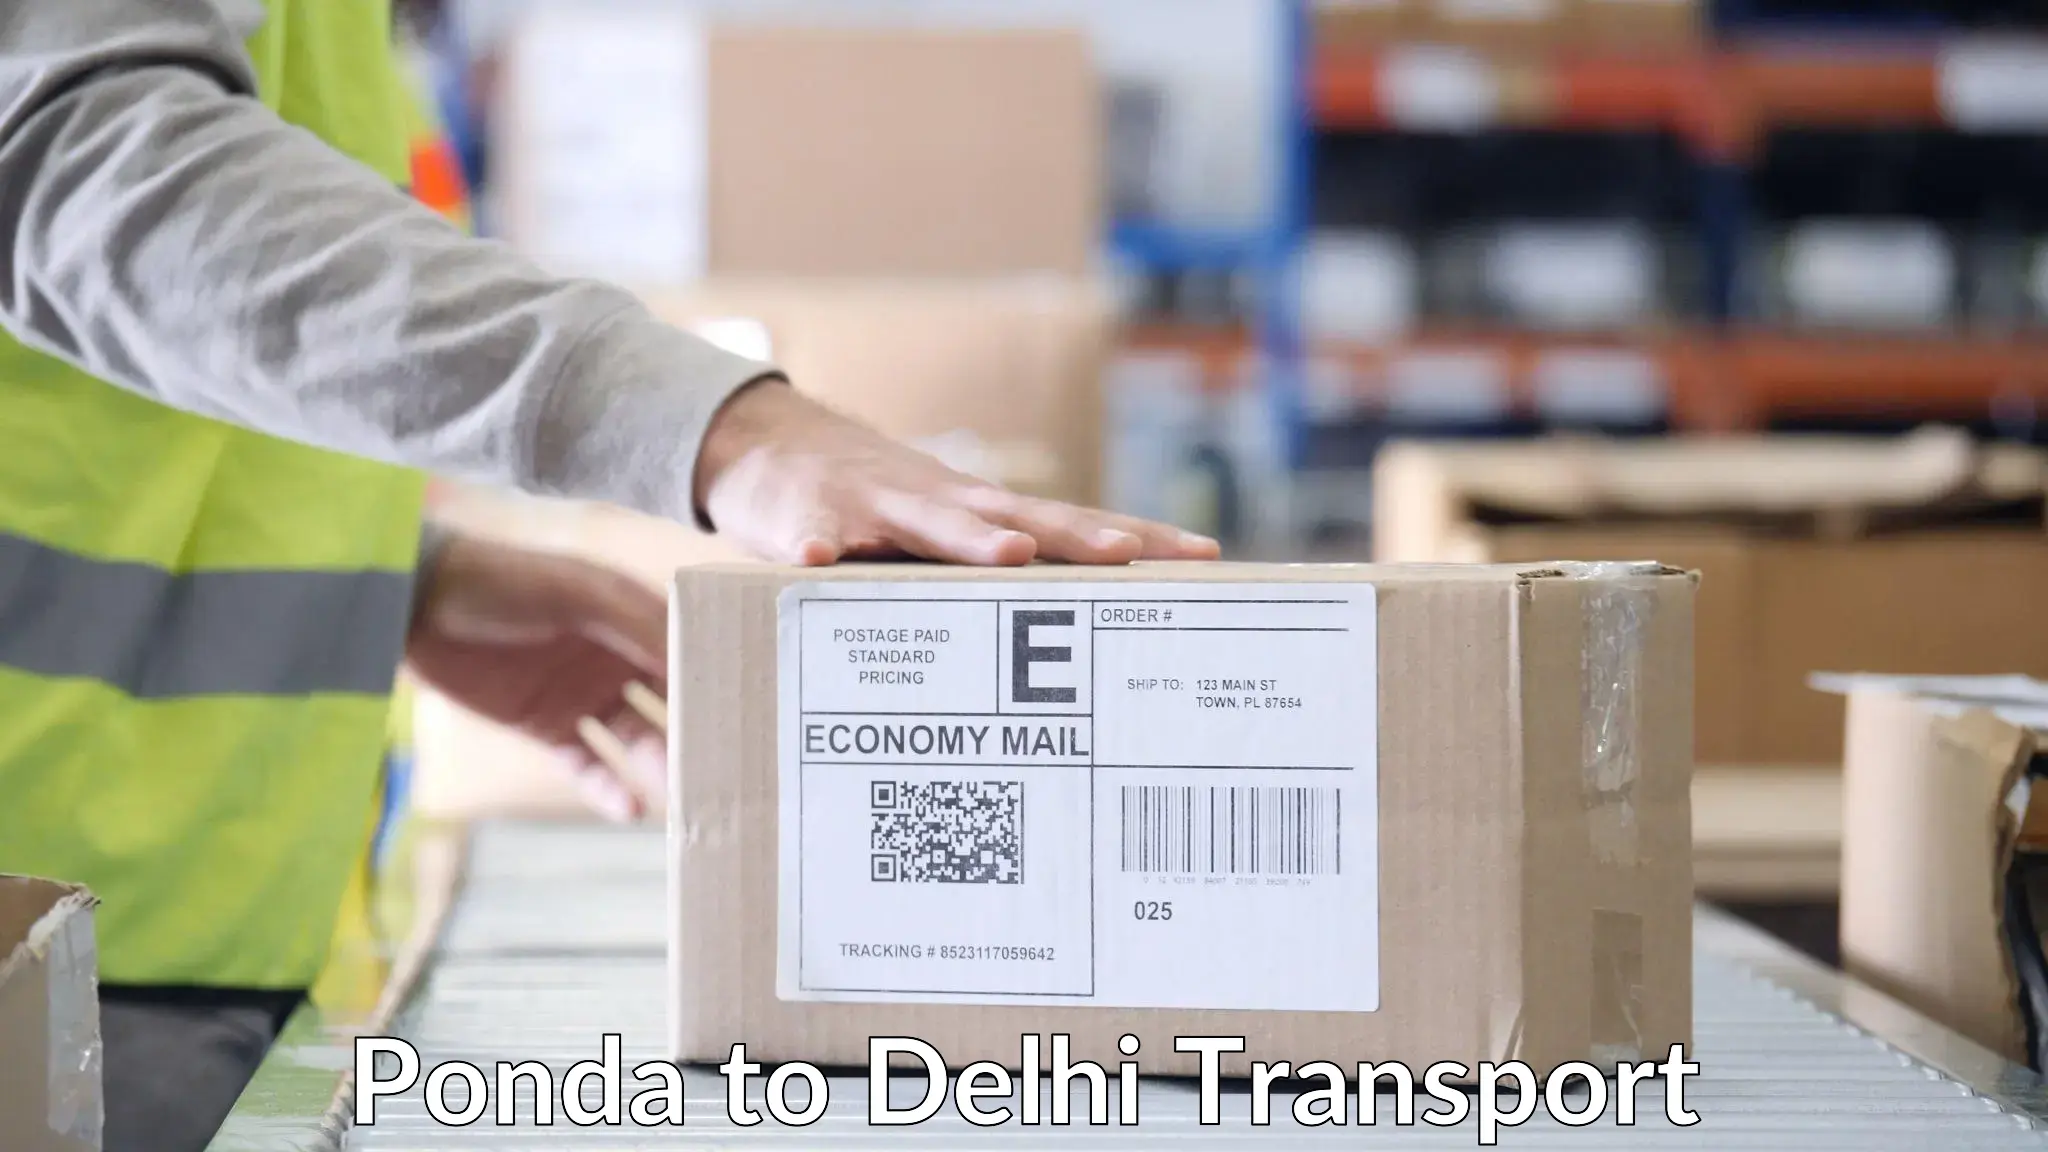 Air cargo transport services Ponda to East Delhi